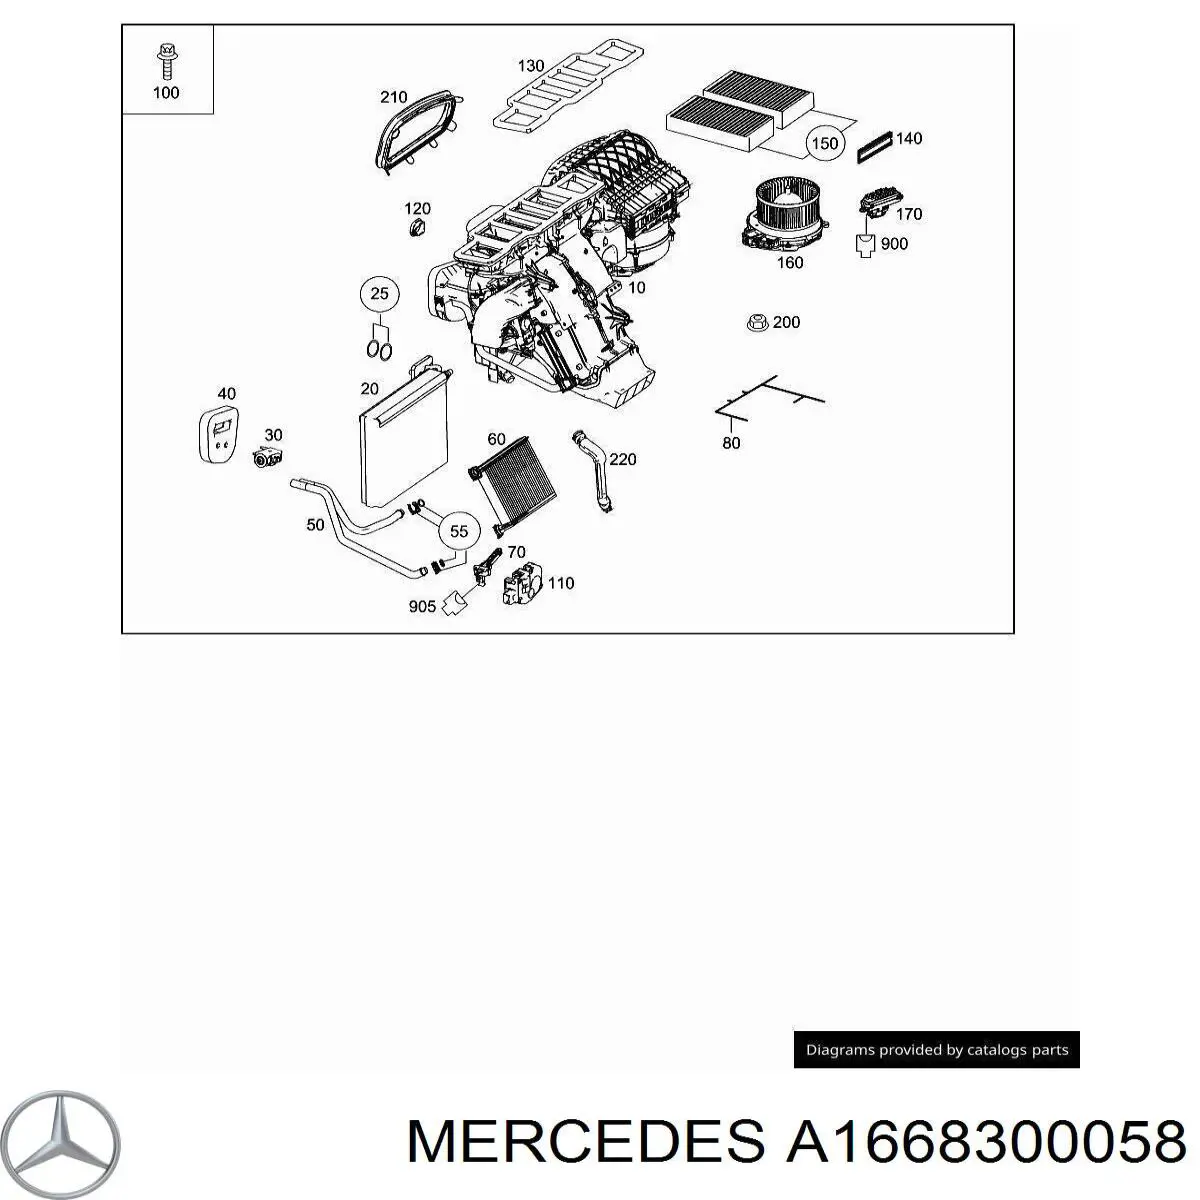 A1668300058 Mercedes vaporizador de aparelho de ar condicionado